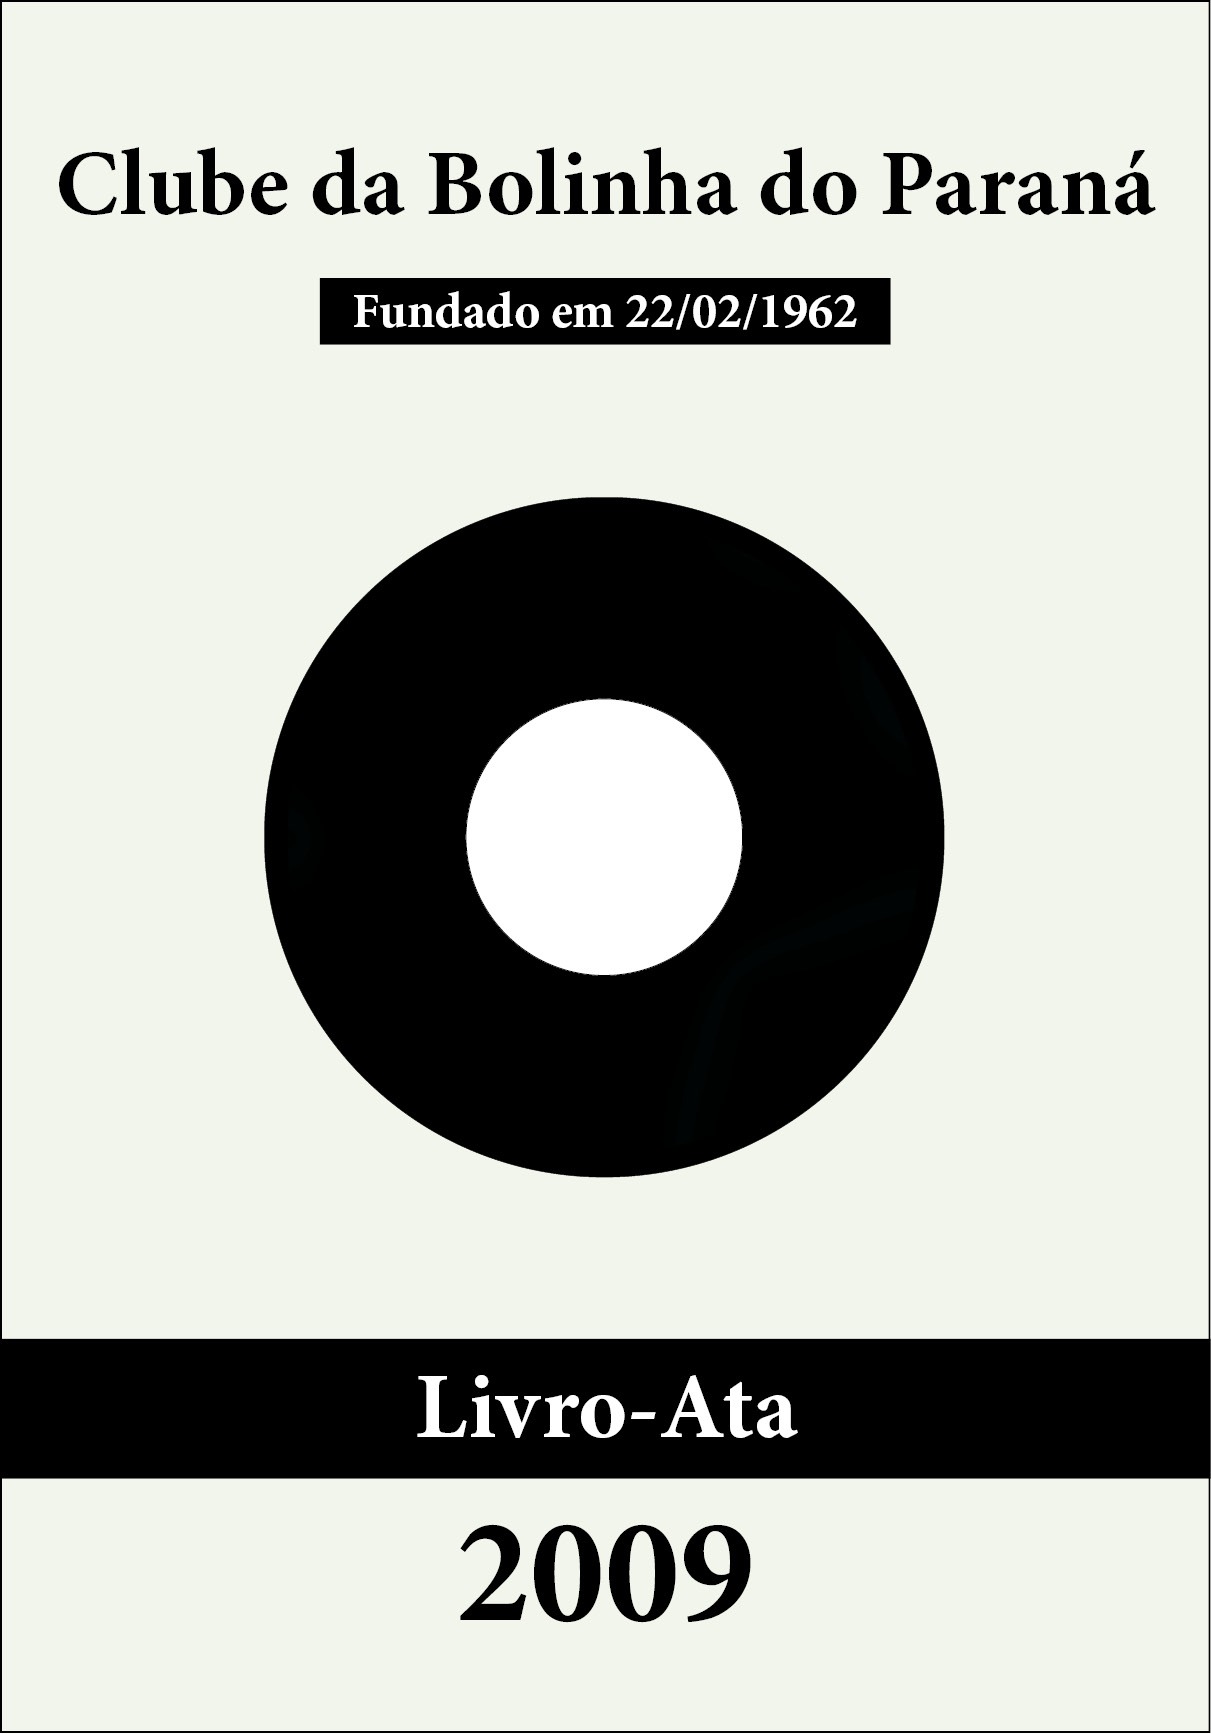 Bolinha - Livro-Ata 2009